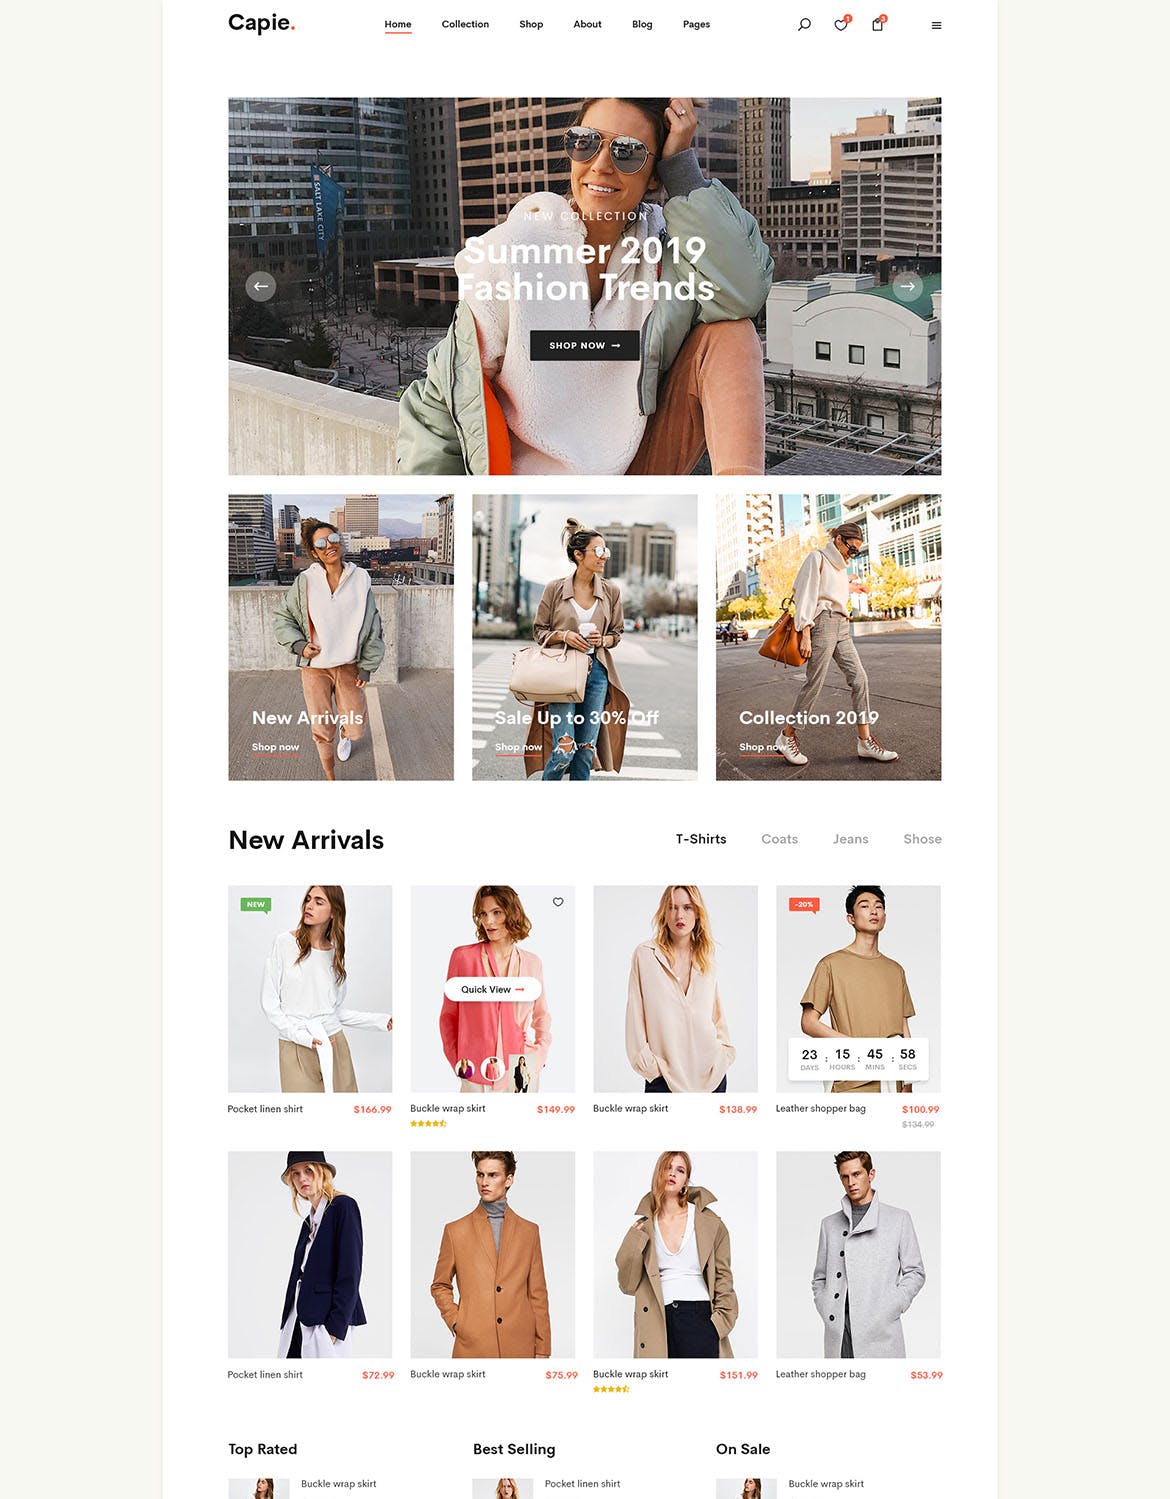 简约时尚设计风格电商网站设计PSD模板 Capie | Minimalist eCommerce PSD Template插图(11)